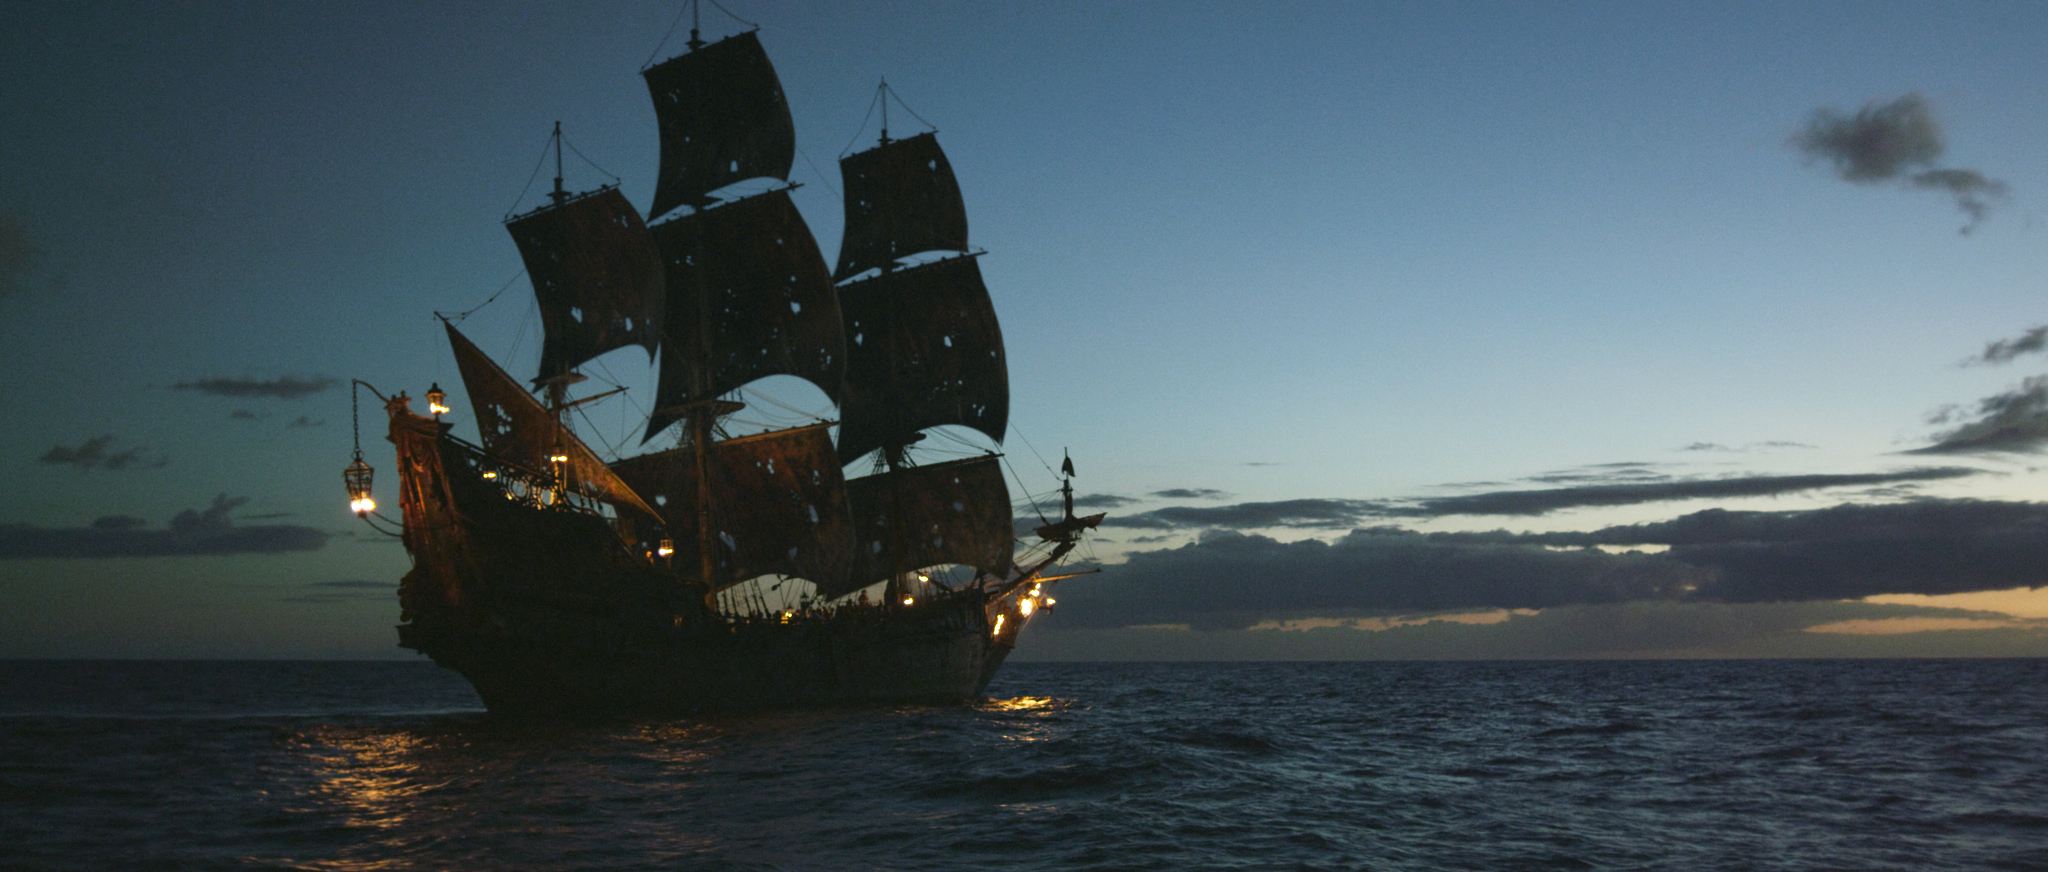 Чёрная Жемчужина корабль из фильма пираты Карибского моря